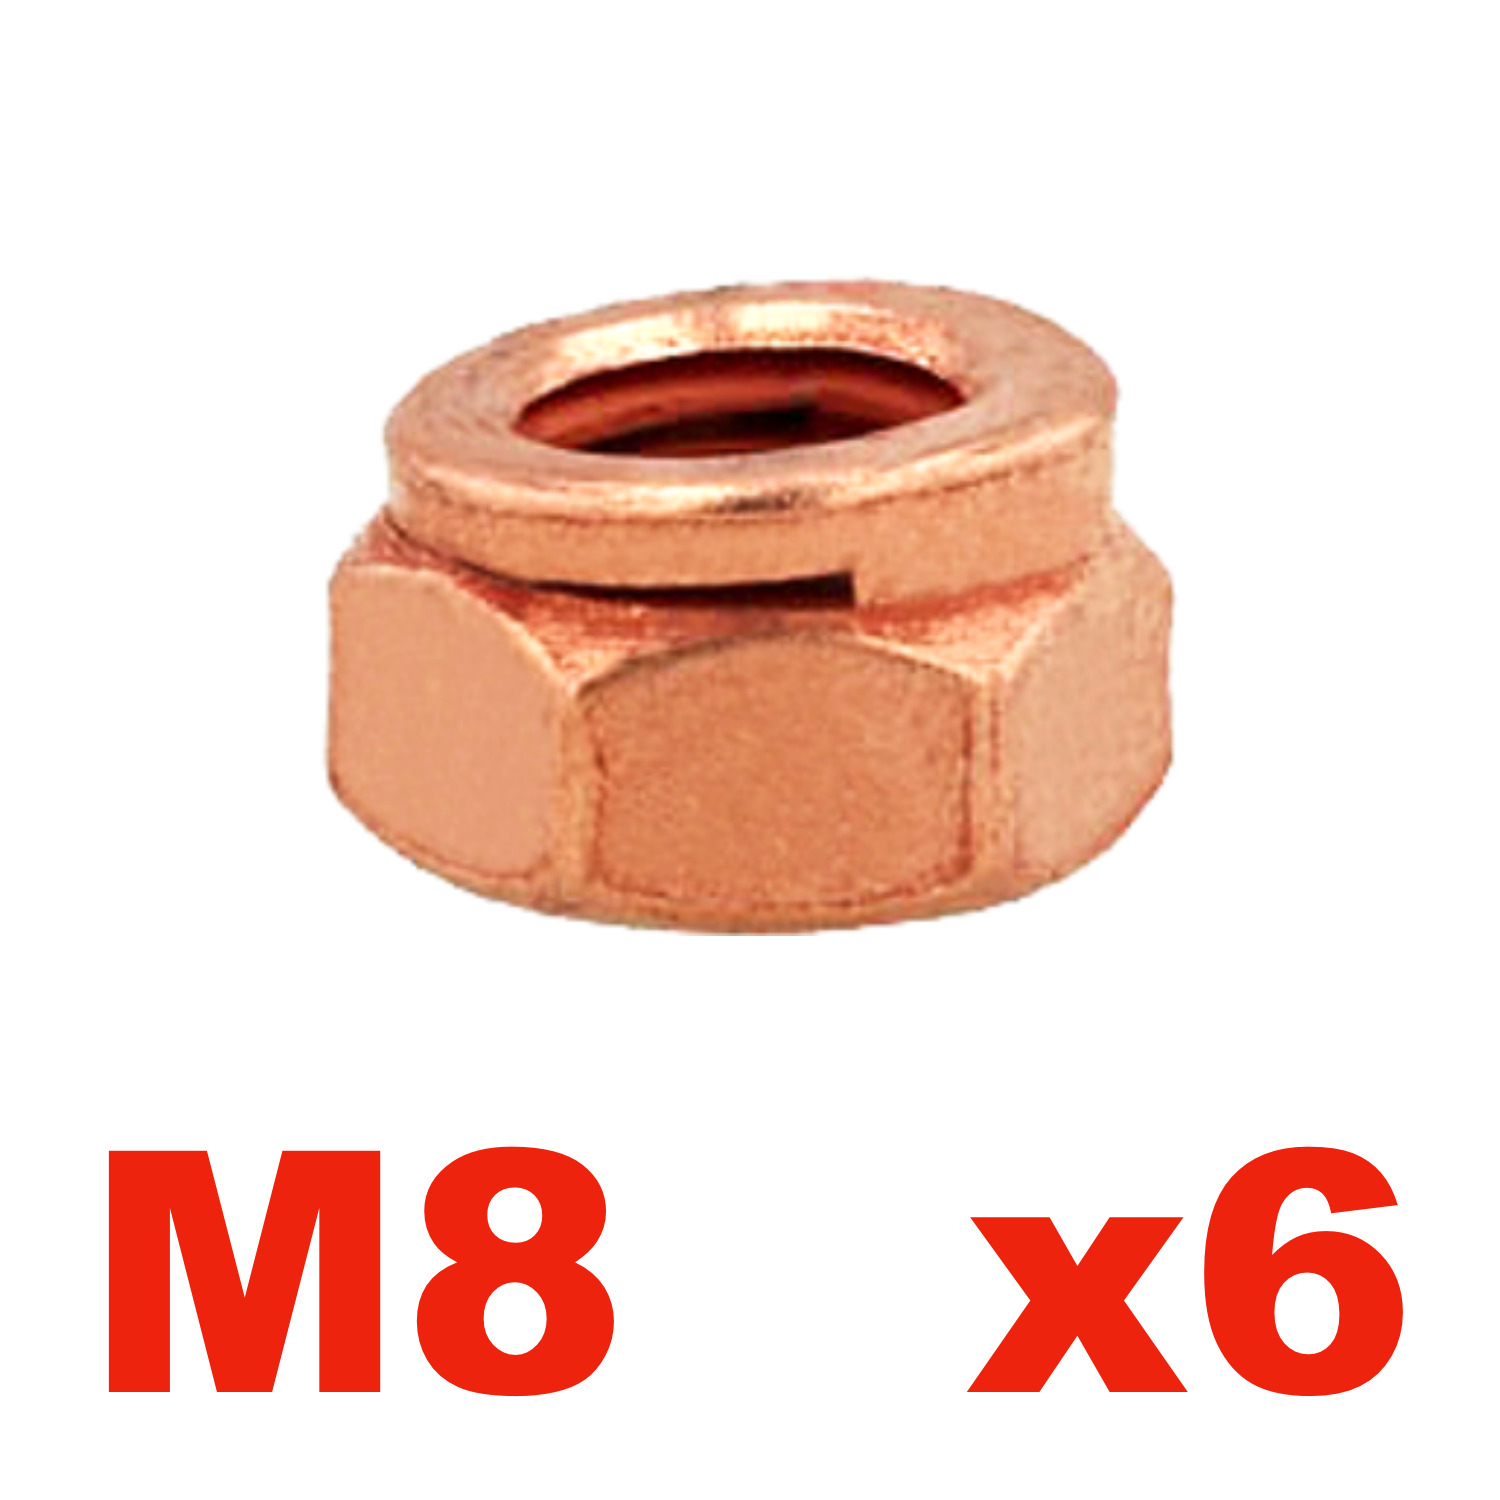 M8 x 1.25 Copper Exhaust Nut With Locking Slit For BMW E30 E36 E46 E90 E39 E34